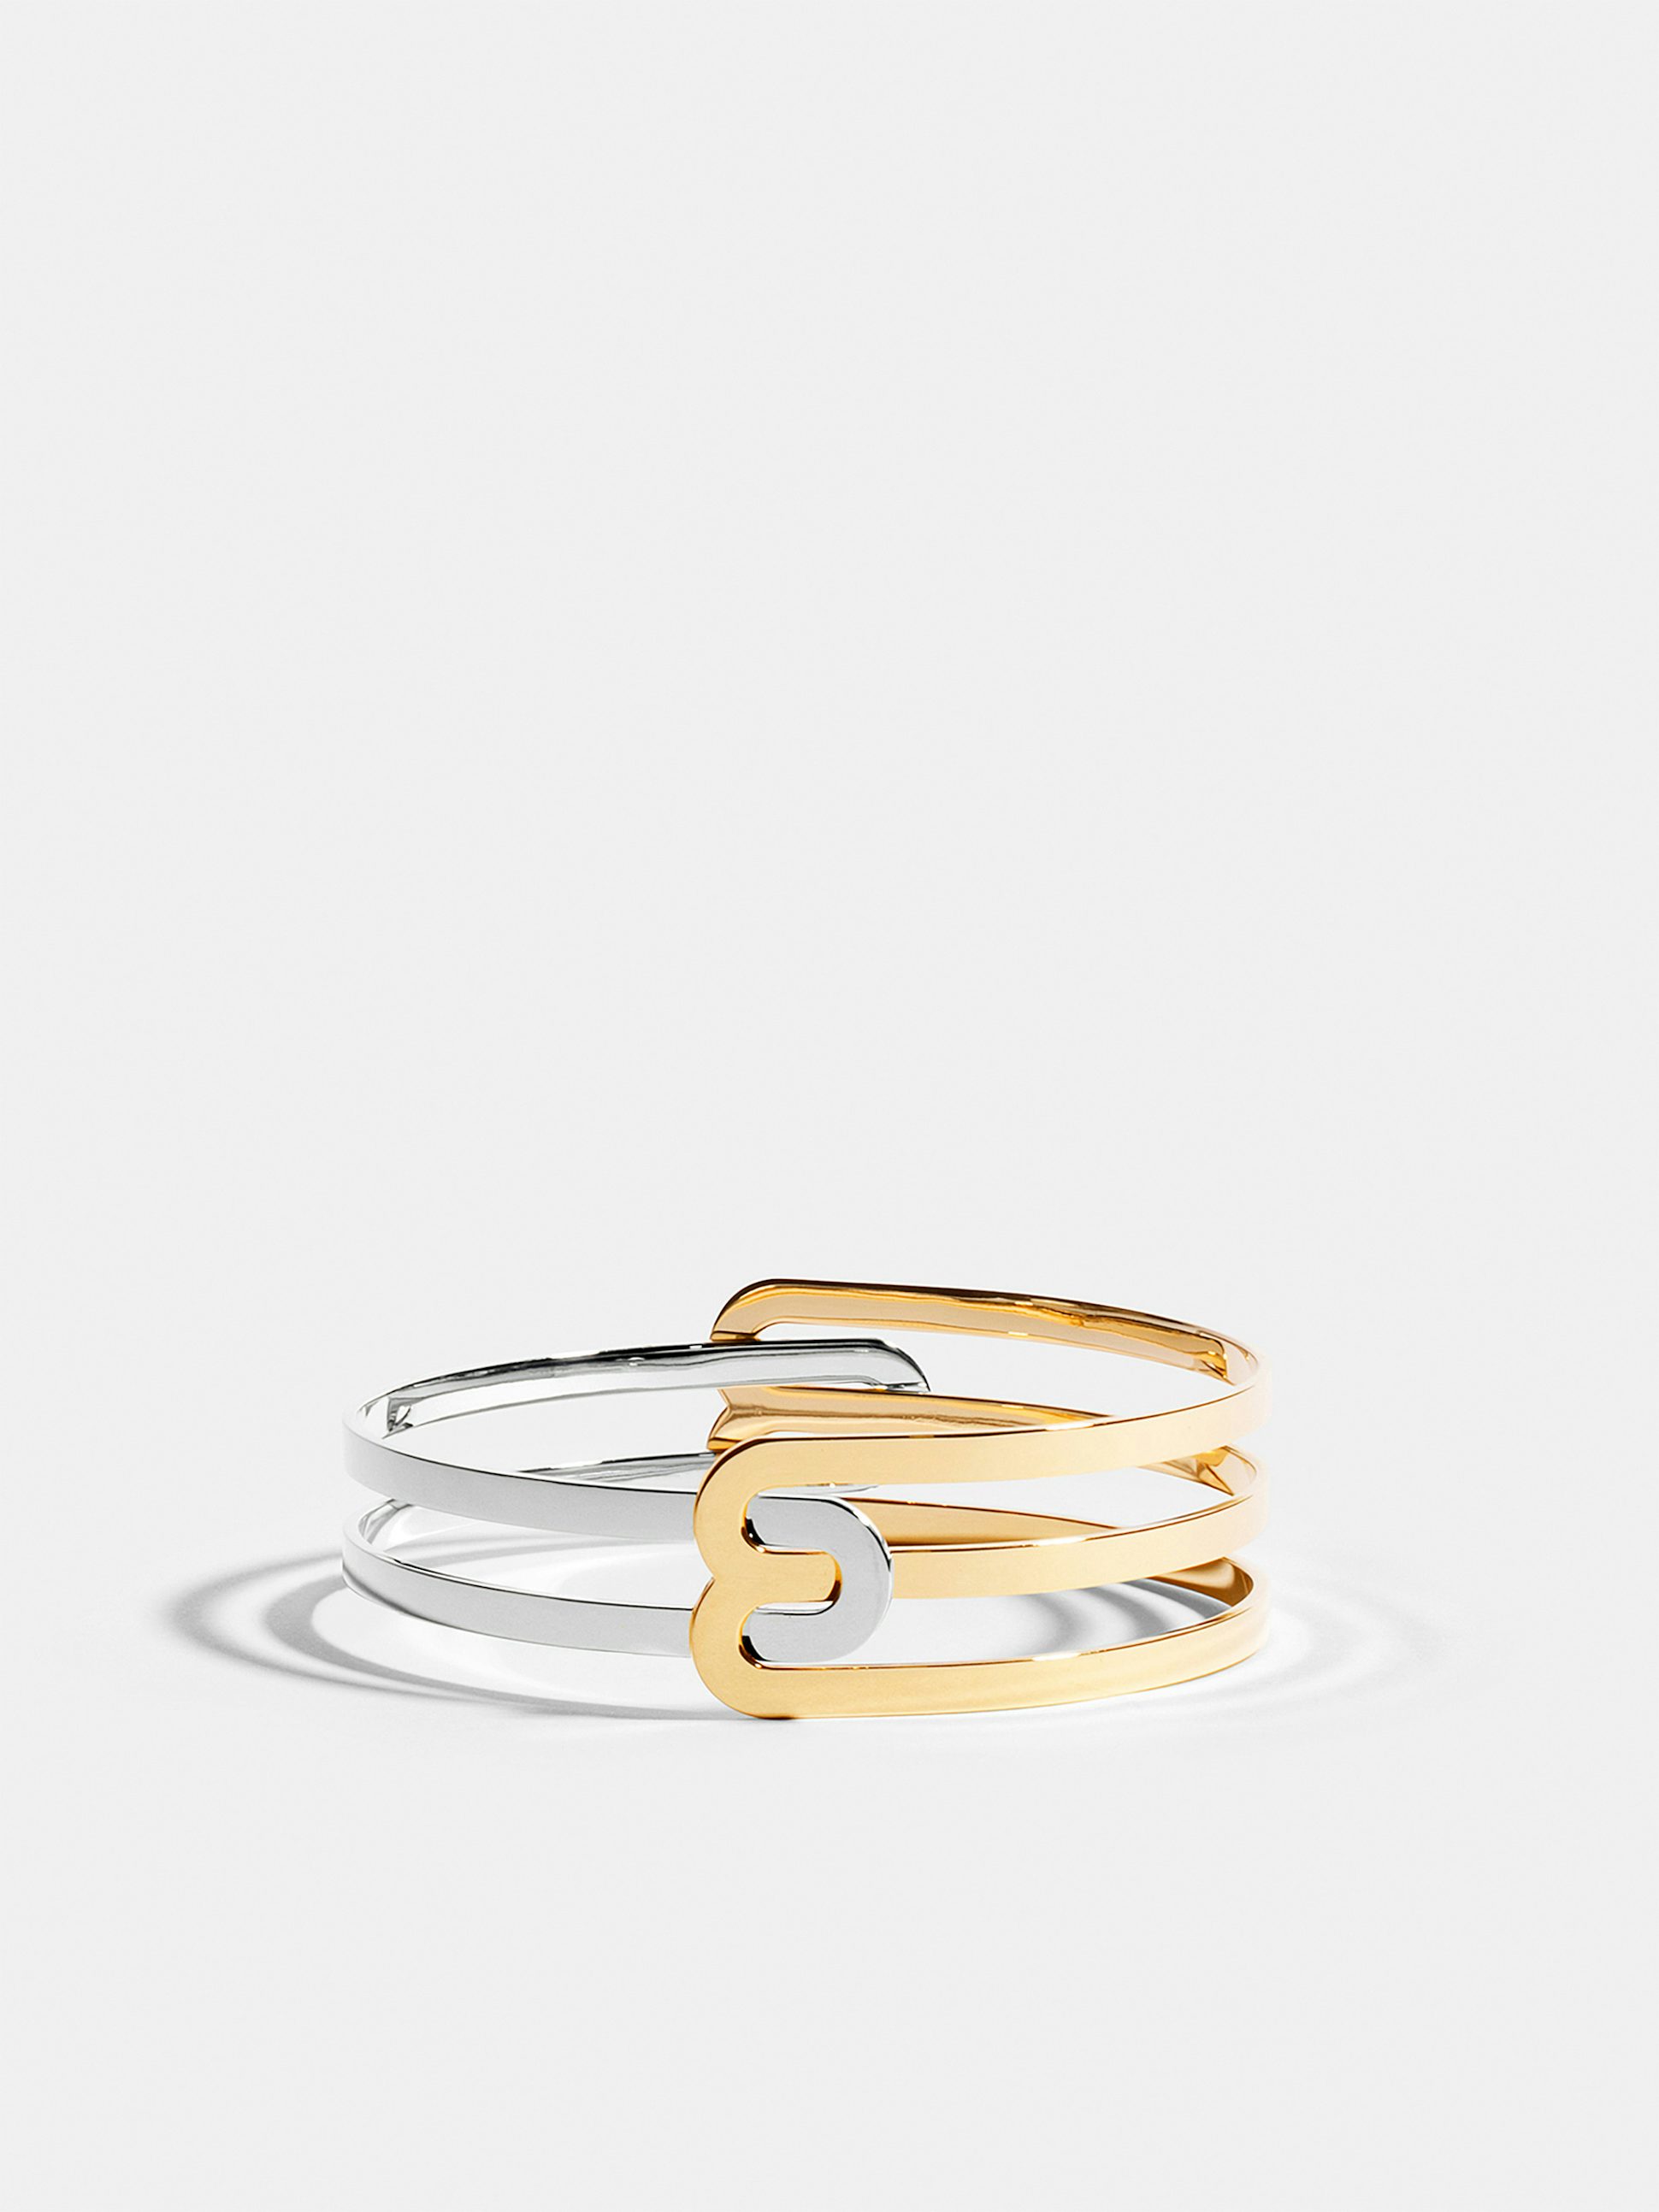 Bracelet Étreintes en Or blanc et jaune éthique 18 carats certifié Fairmined composé d'un demi-bracelet simple finition poli-brillant et d'un demi-bracelet double finition poli-brillant.